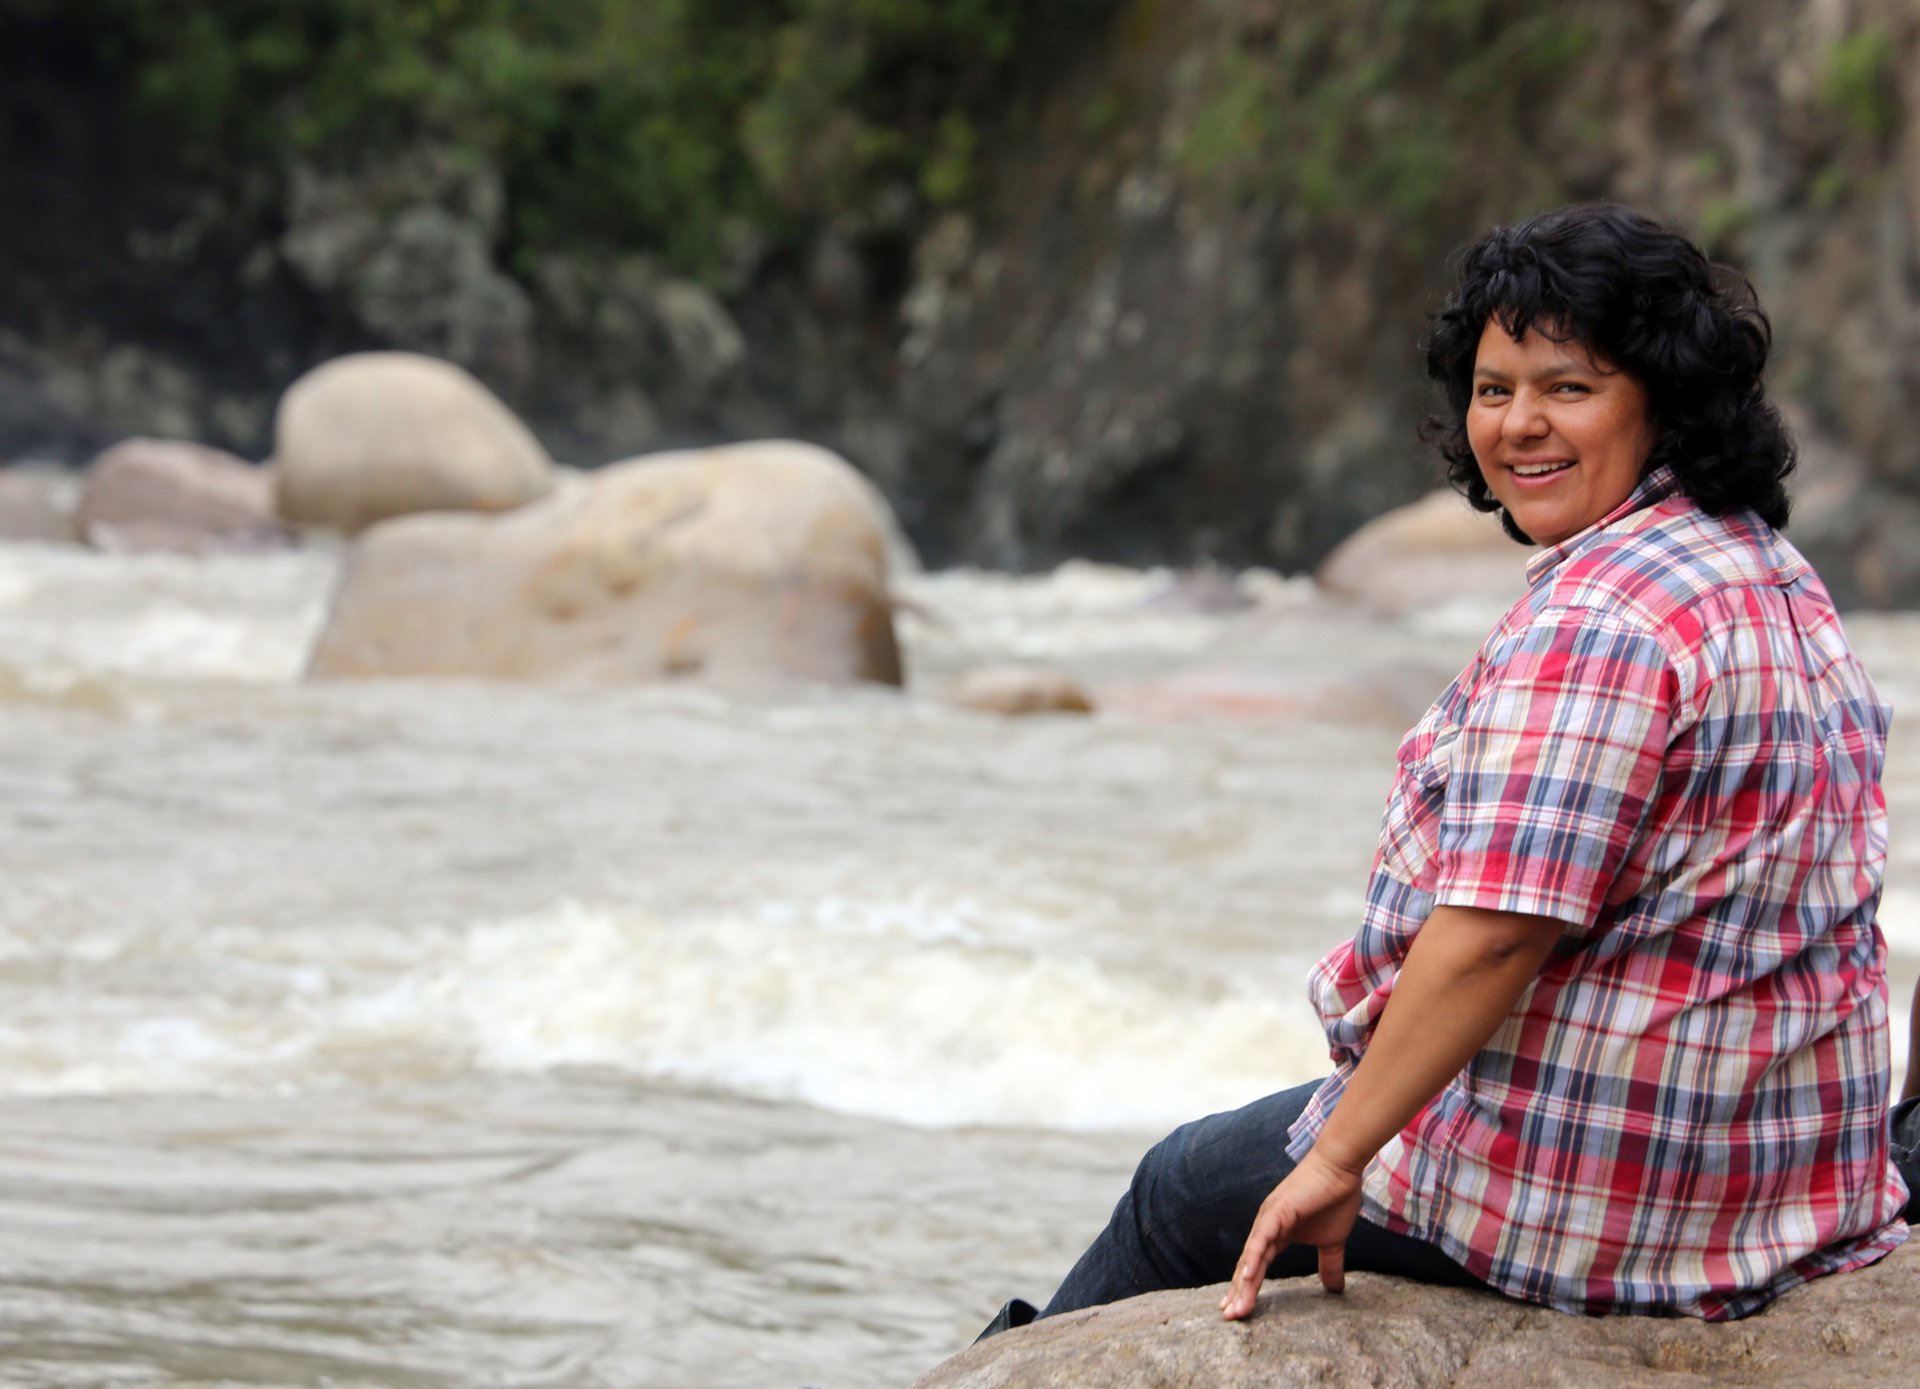 Berta Cáceres falleció en Honduras por defender su entorno natural. (Especial)